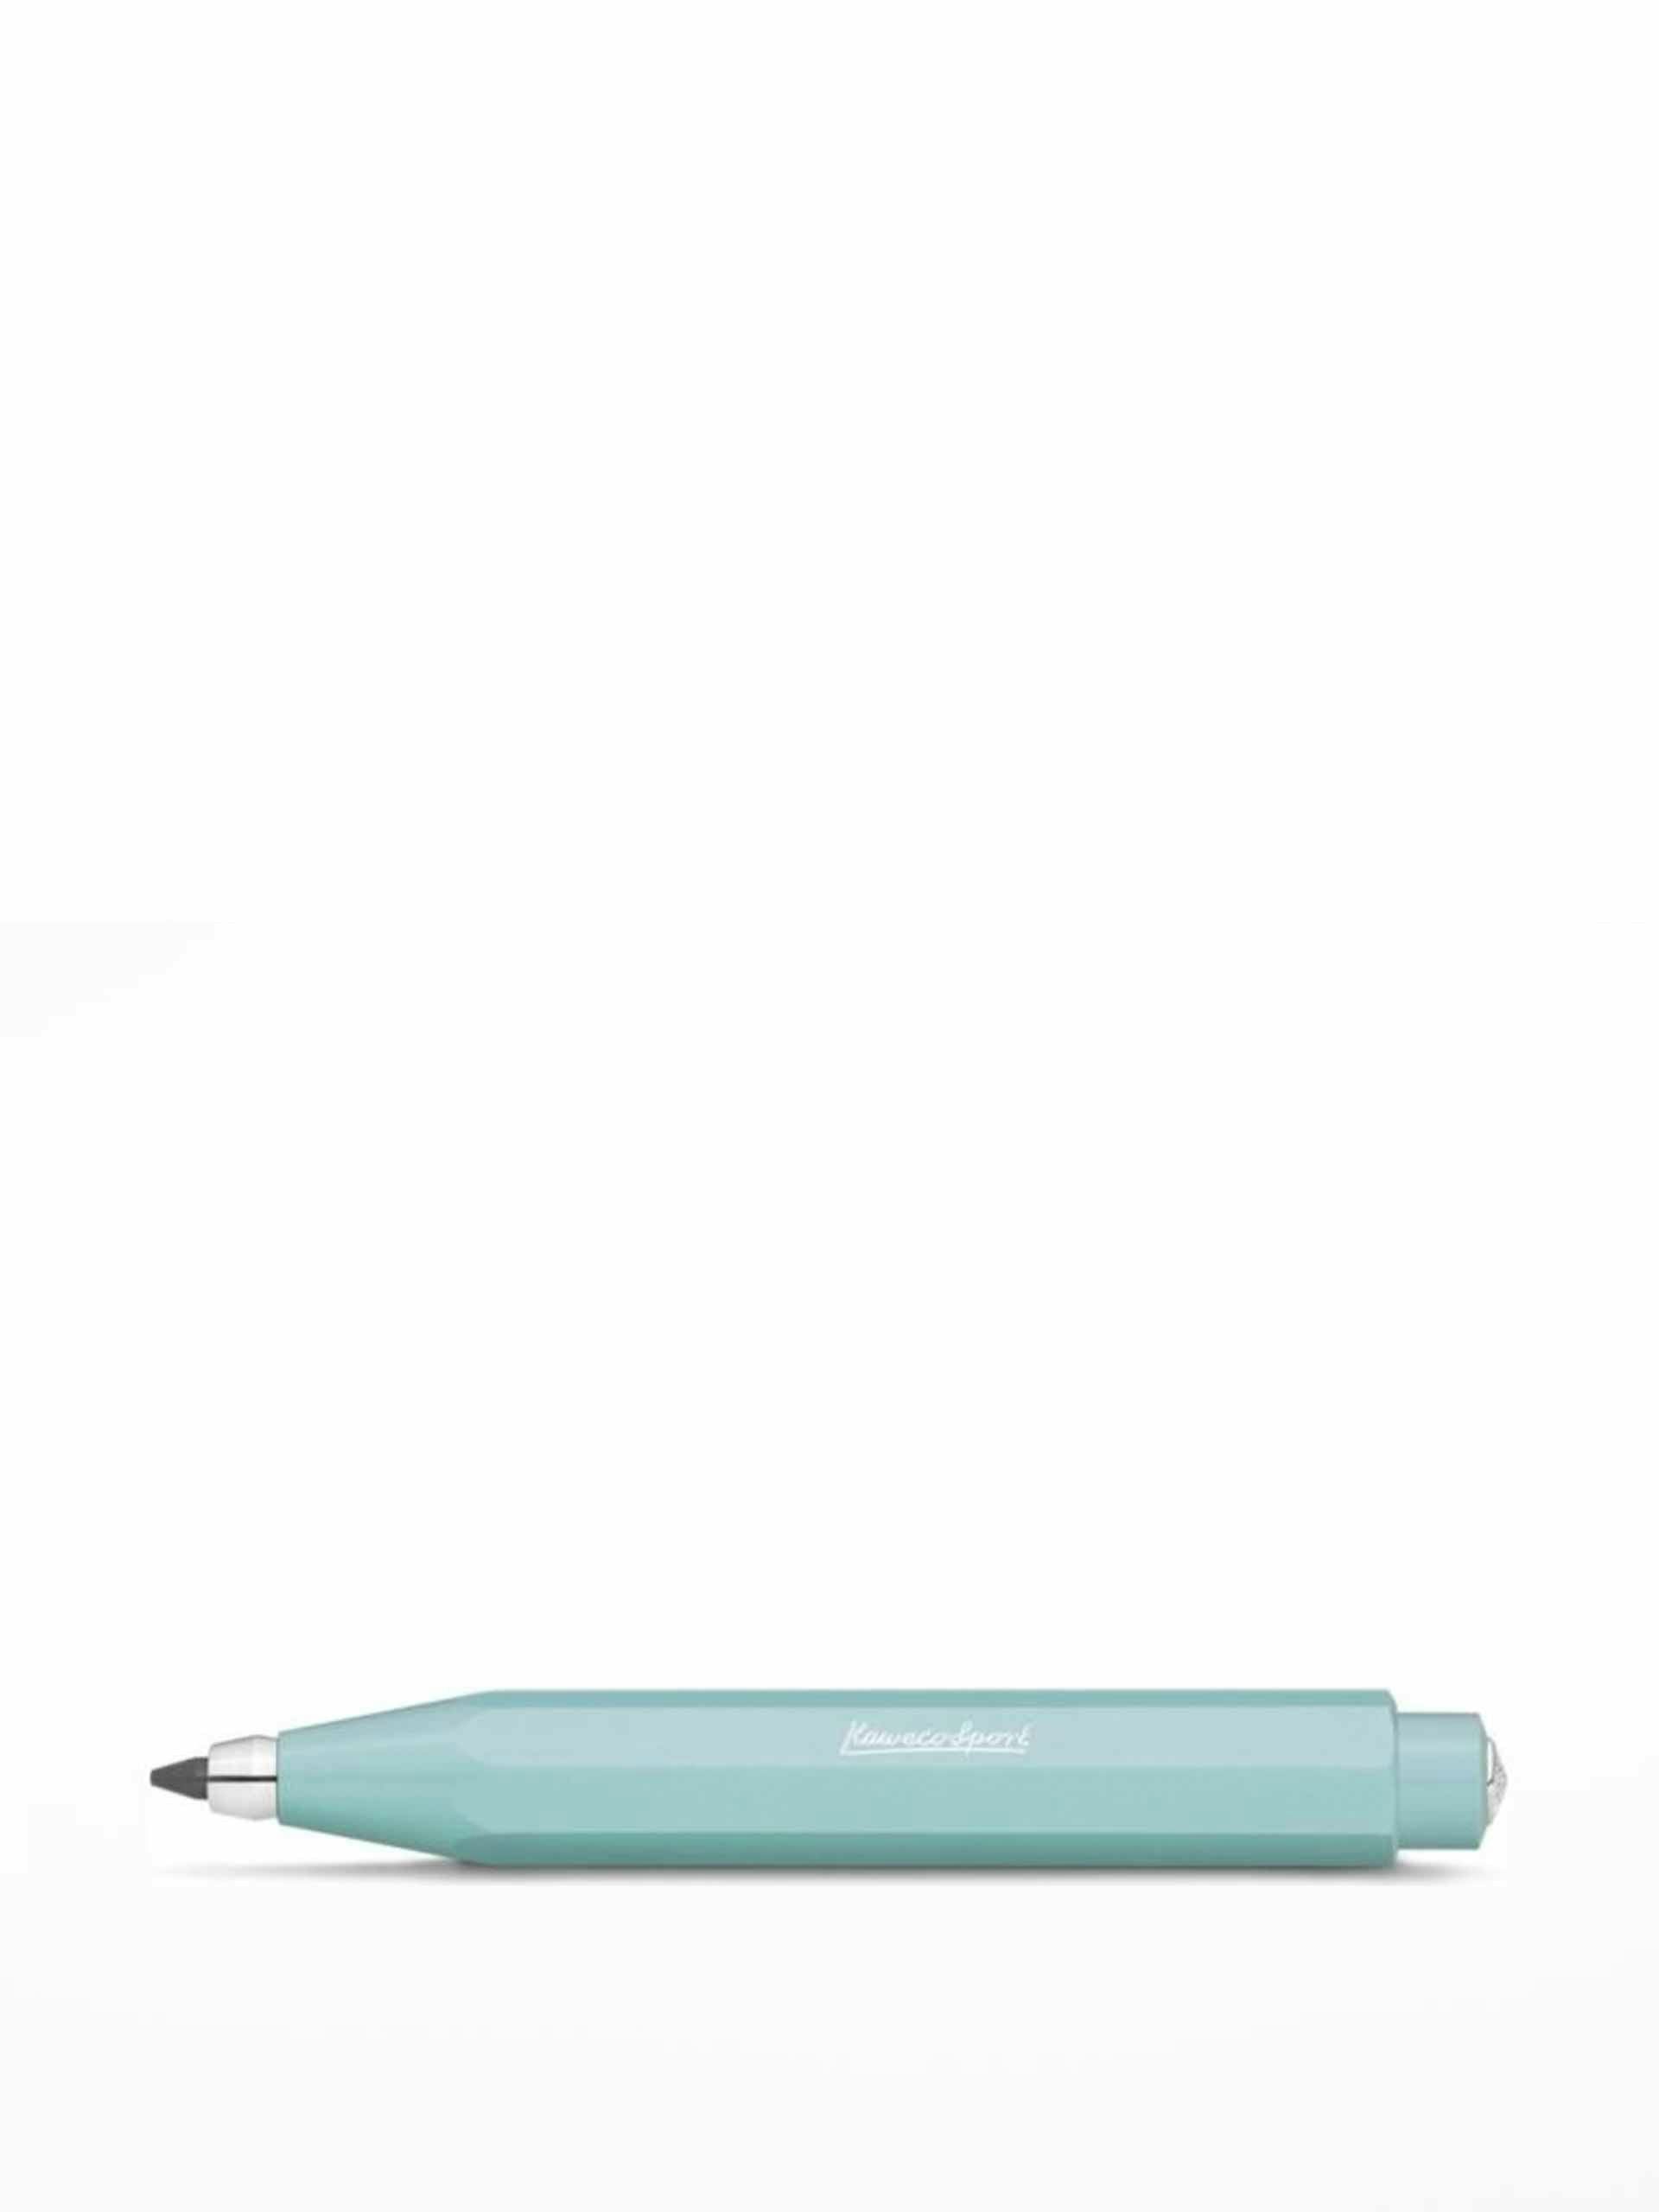 Blue refillable clutch pencil